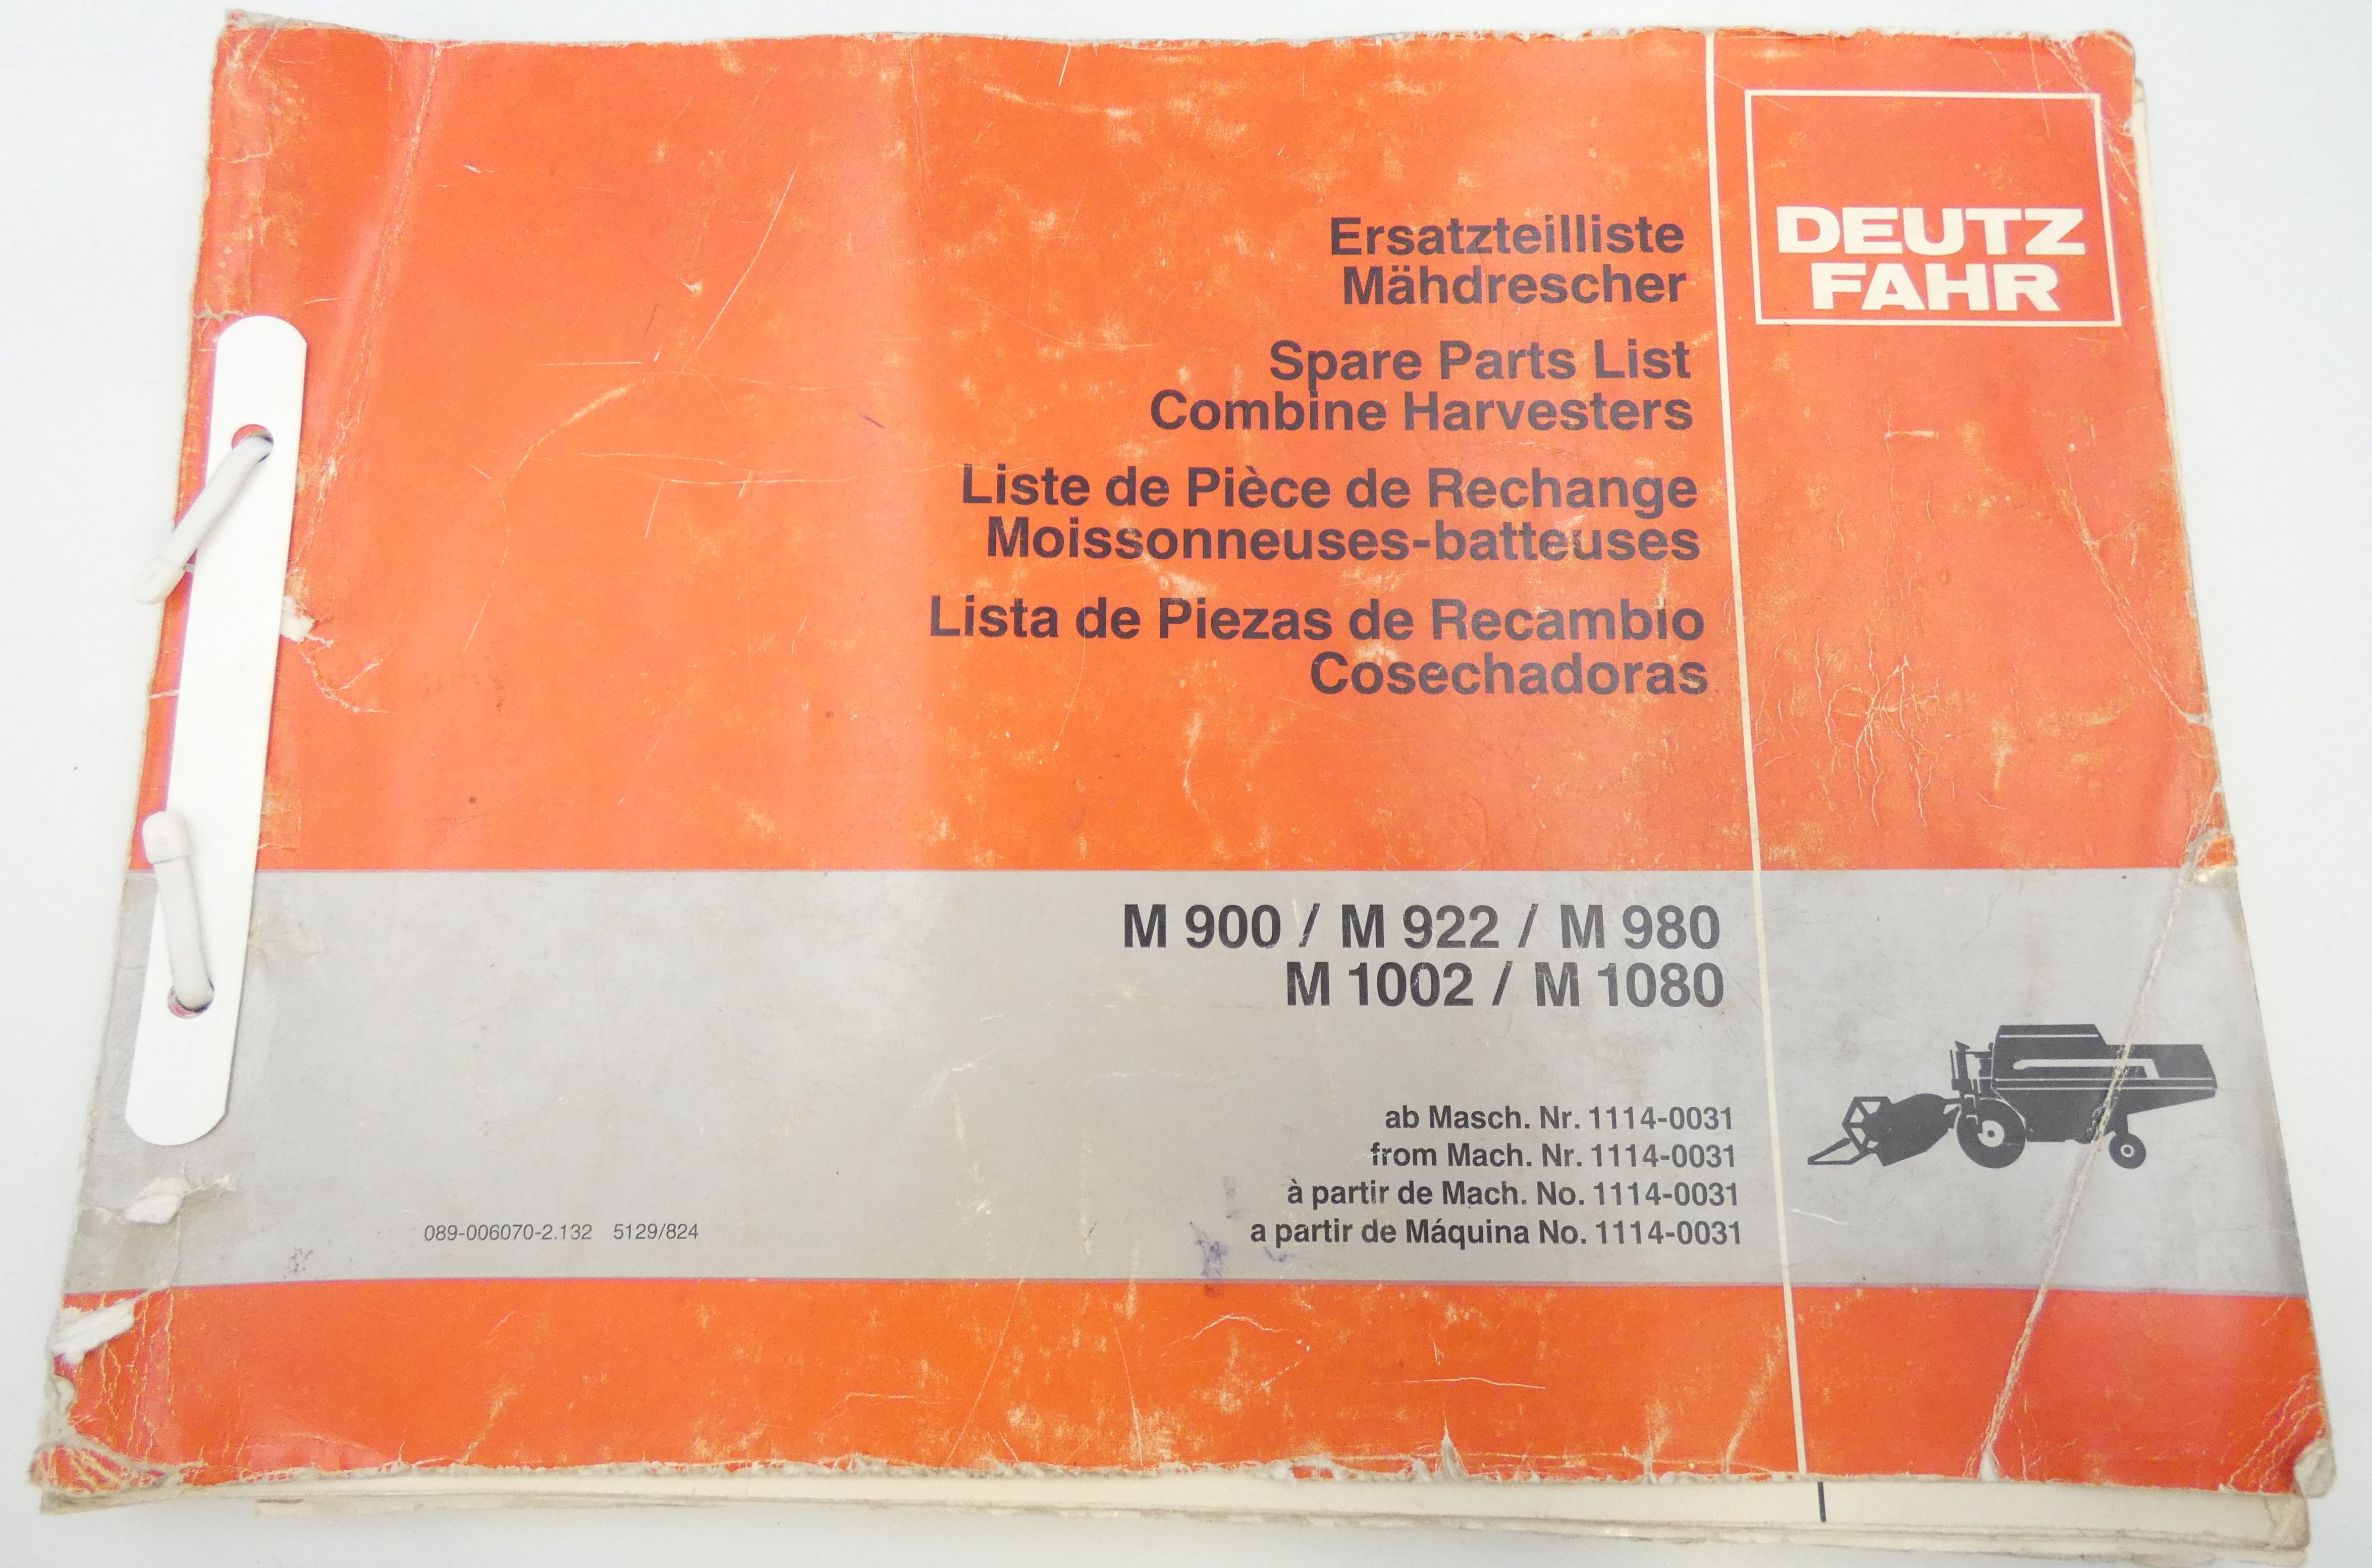 Deutz-Fahr M900, M922, M980, M1002, M1080 combine harvesters spare parts list